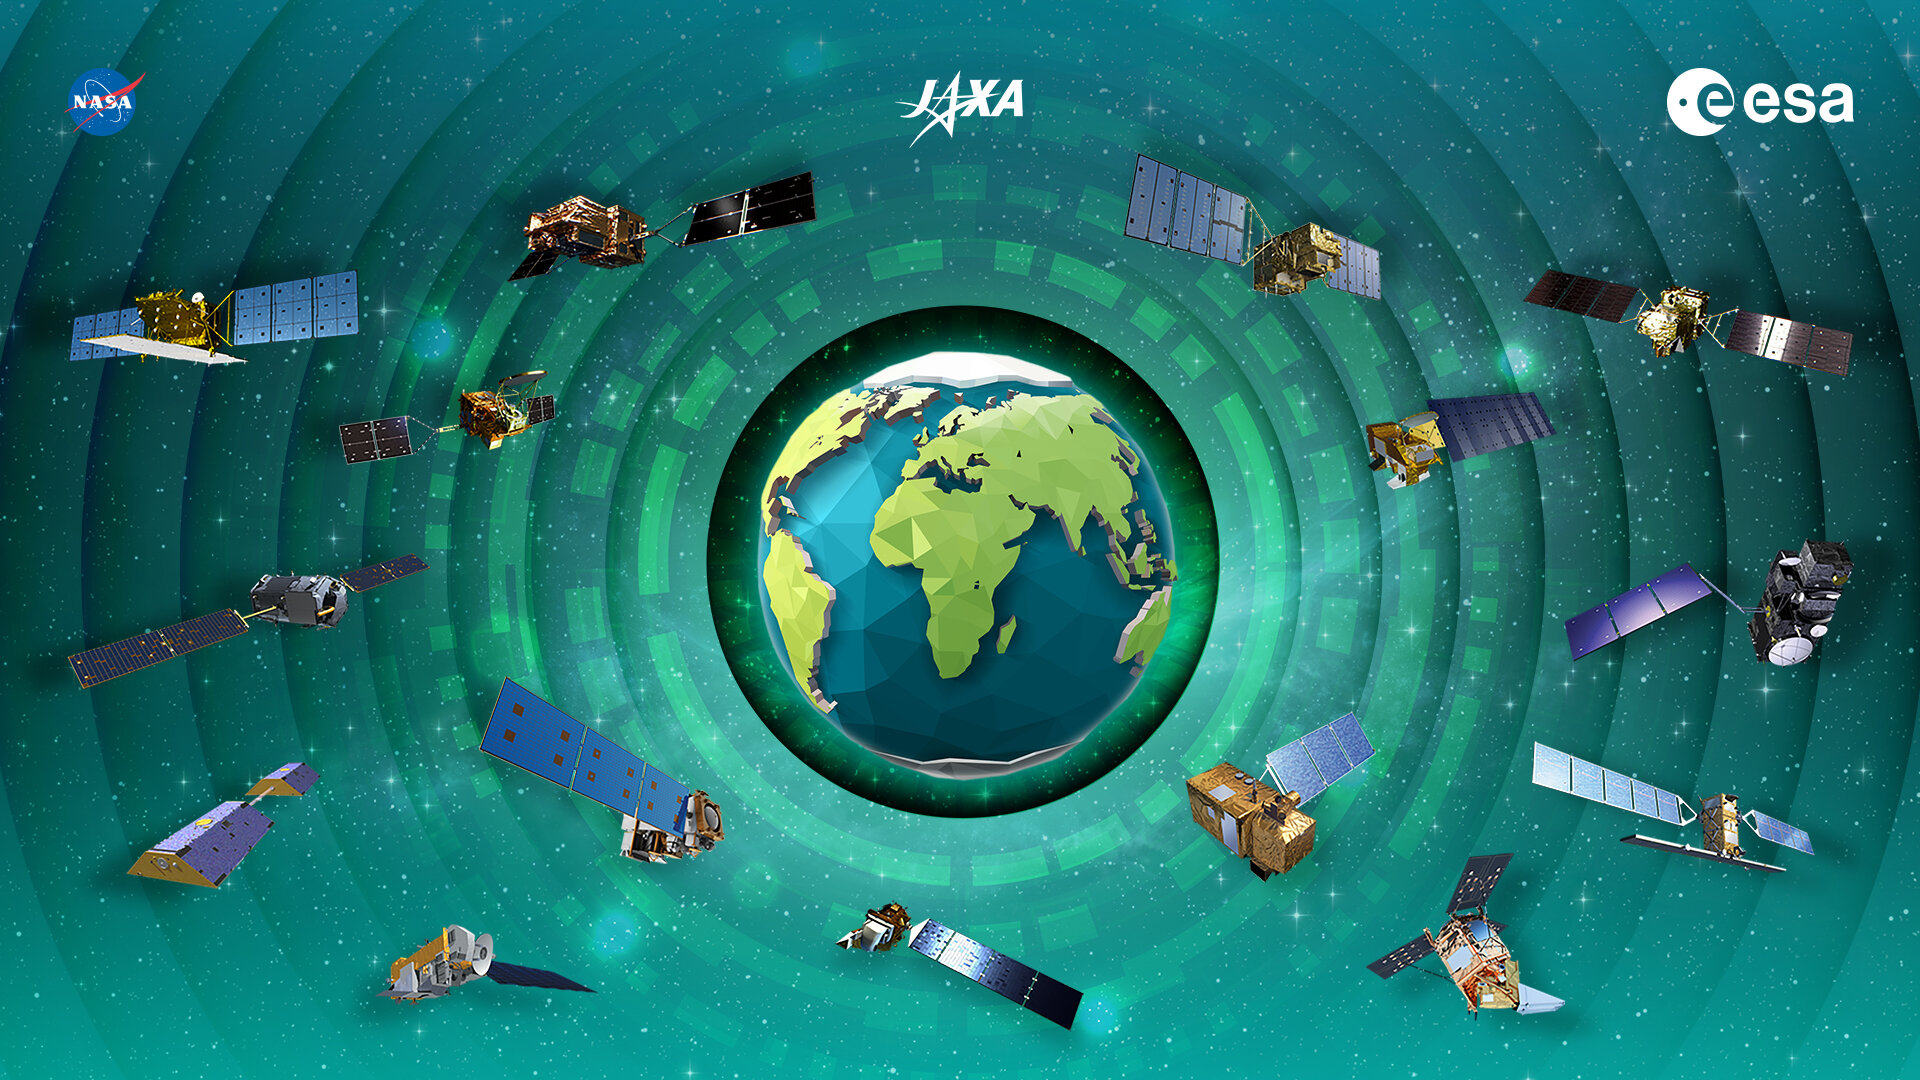 Las agencias espaciales ofrecen una visión global de nuestro entorno cambiante